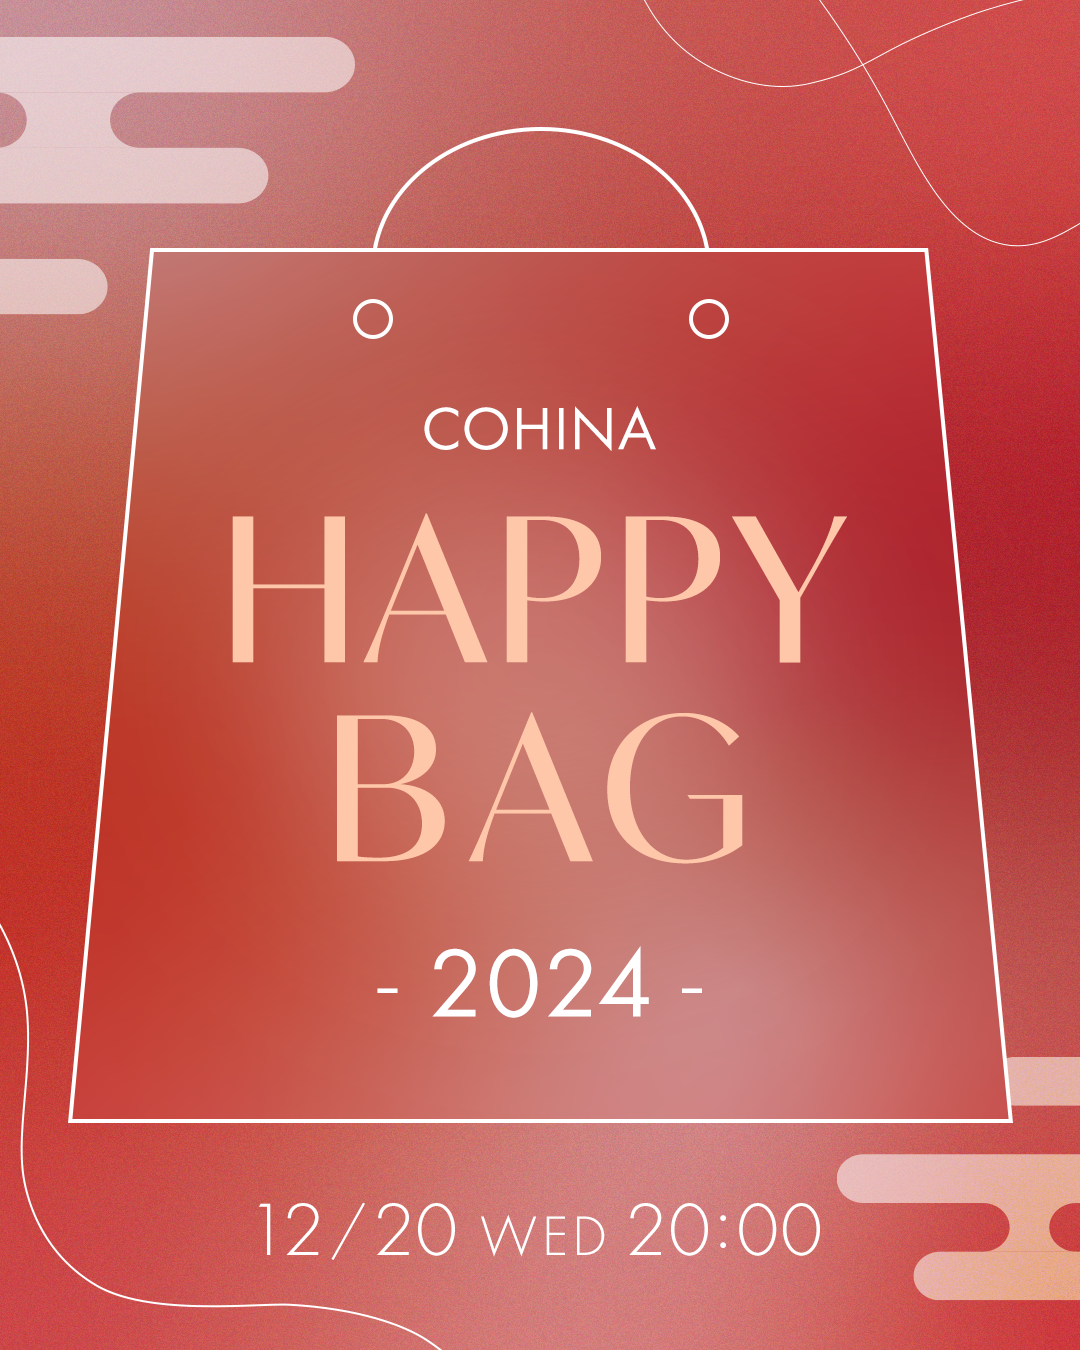 COHINA HAPPY BAG 2024 – COHINA STORE